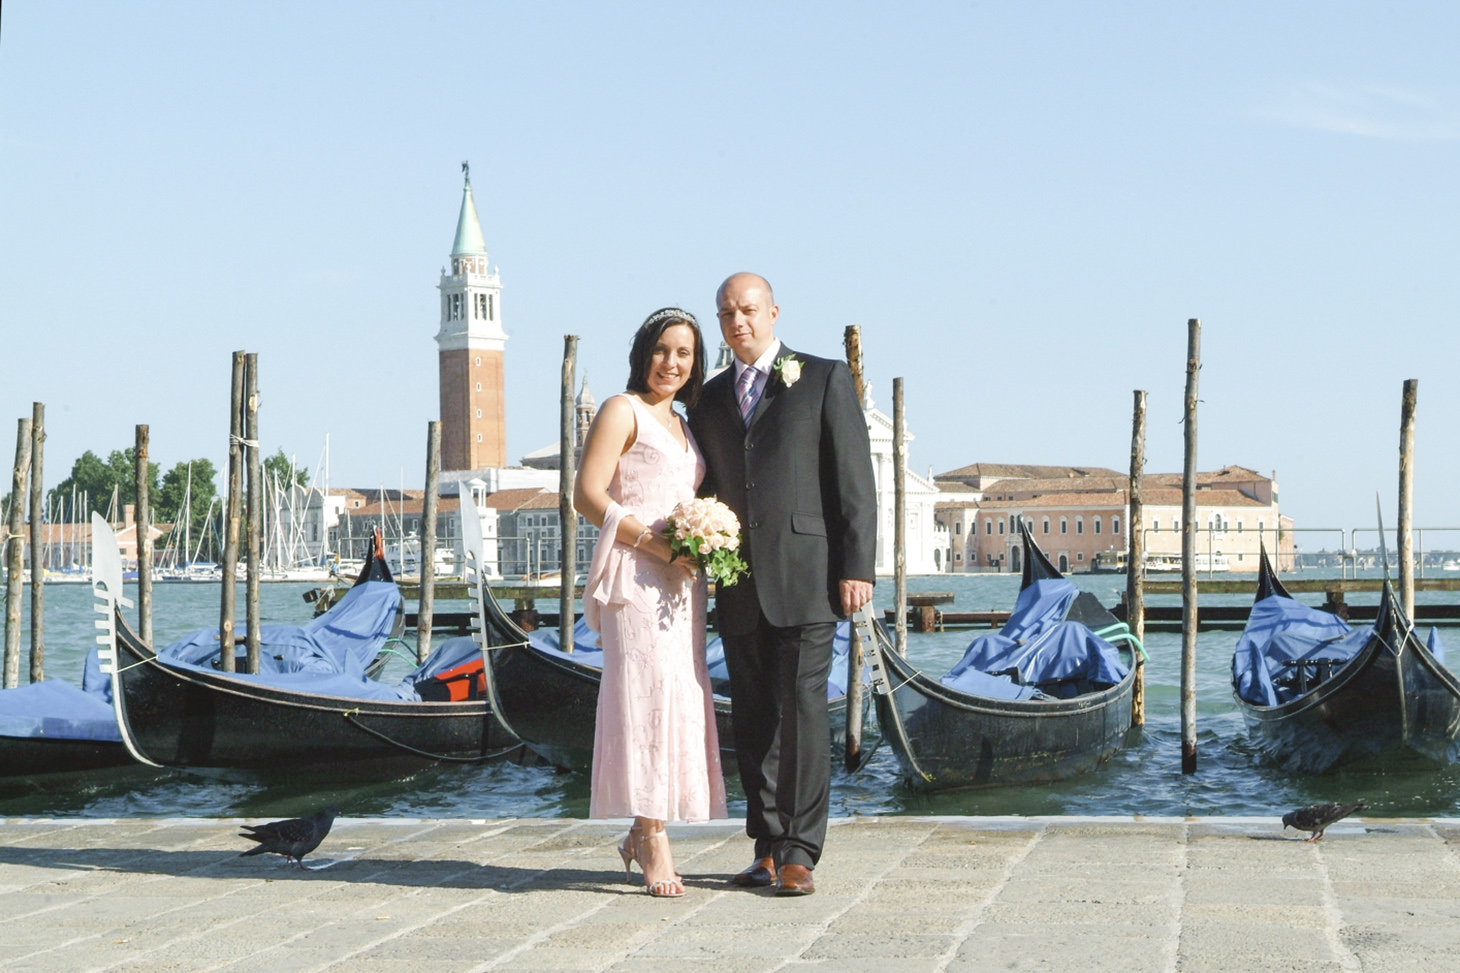 Emma & Tony | Venice